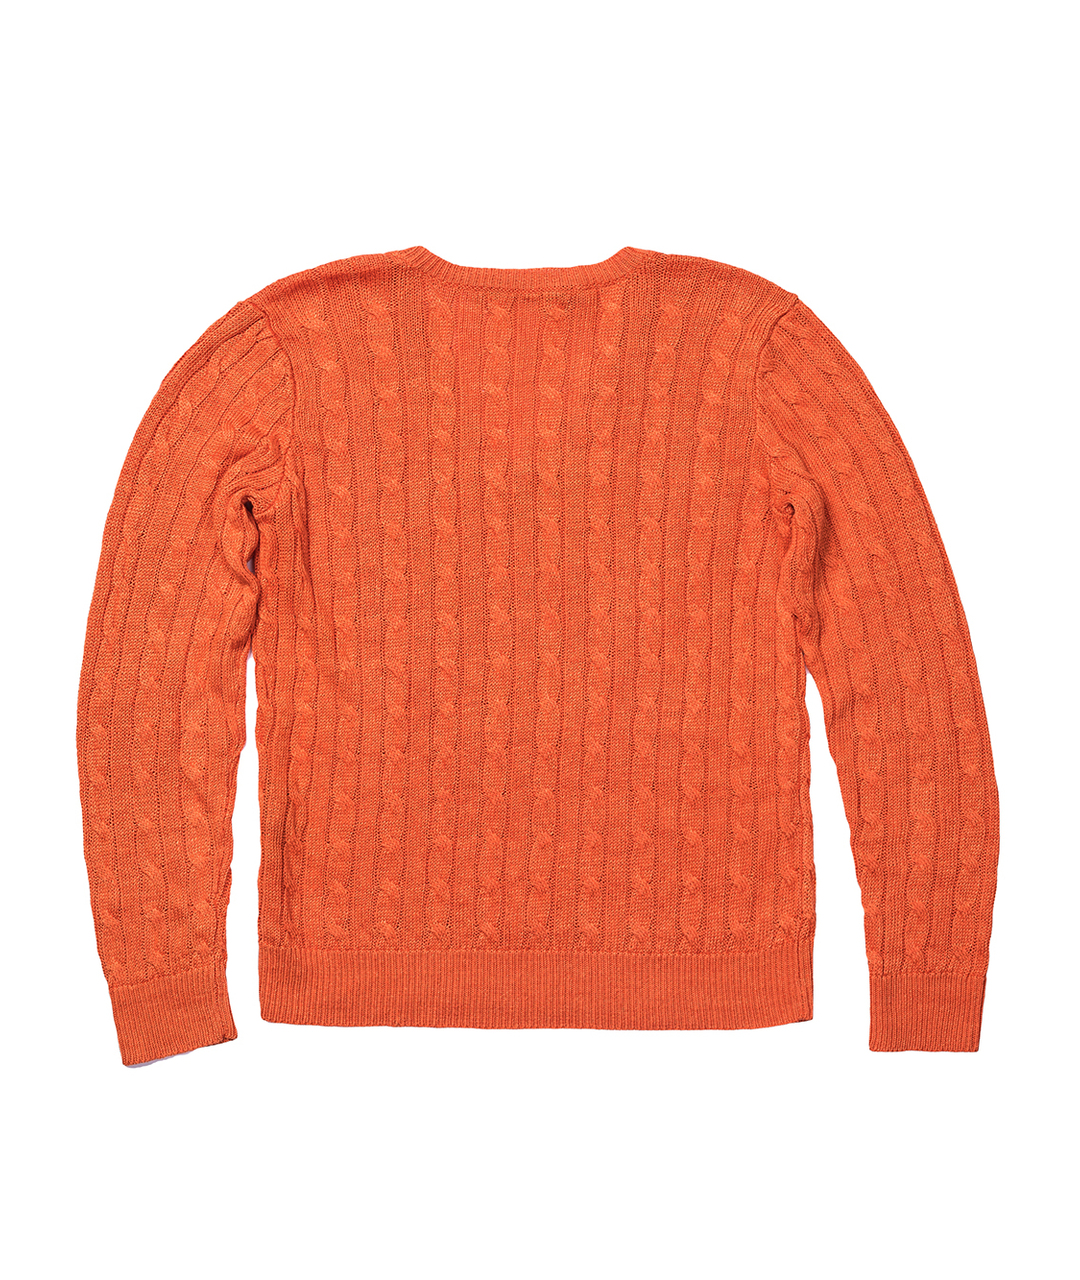 RALPH LAUREN Оранжевый хлопковый джемпер / свитер, фото 2